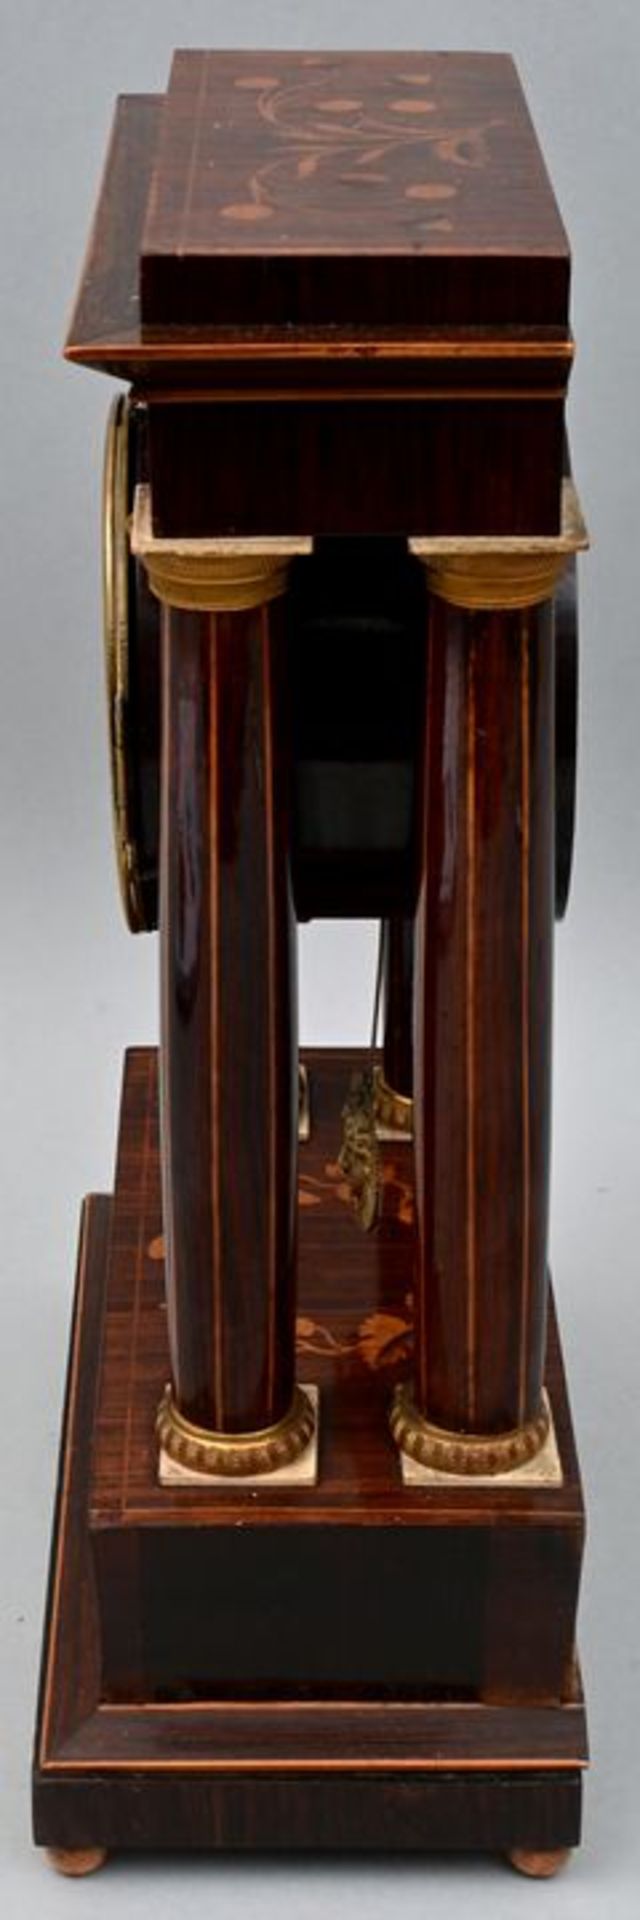 951 Stutzuhr Franz Liszt, Wien, Holzintarsien/ mantel clock - Image 2 of 7